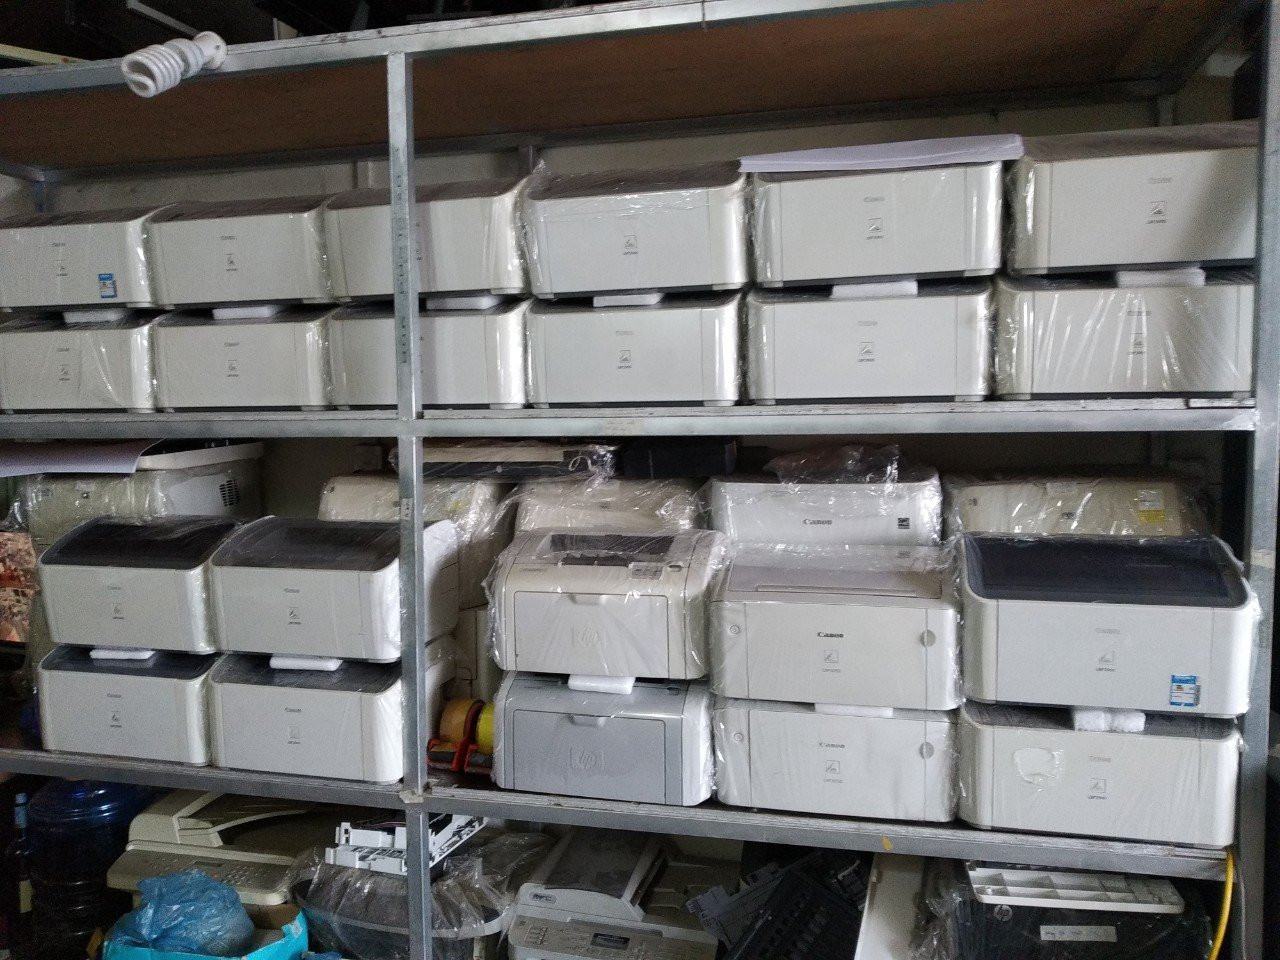 Bán máy in cũ giá rẻ tại Hà Nội và các tỉnh miền Bắc